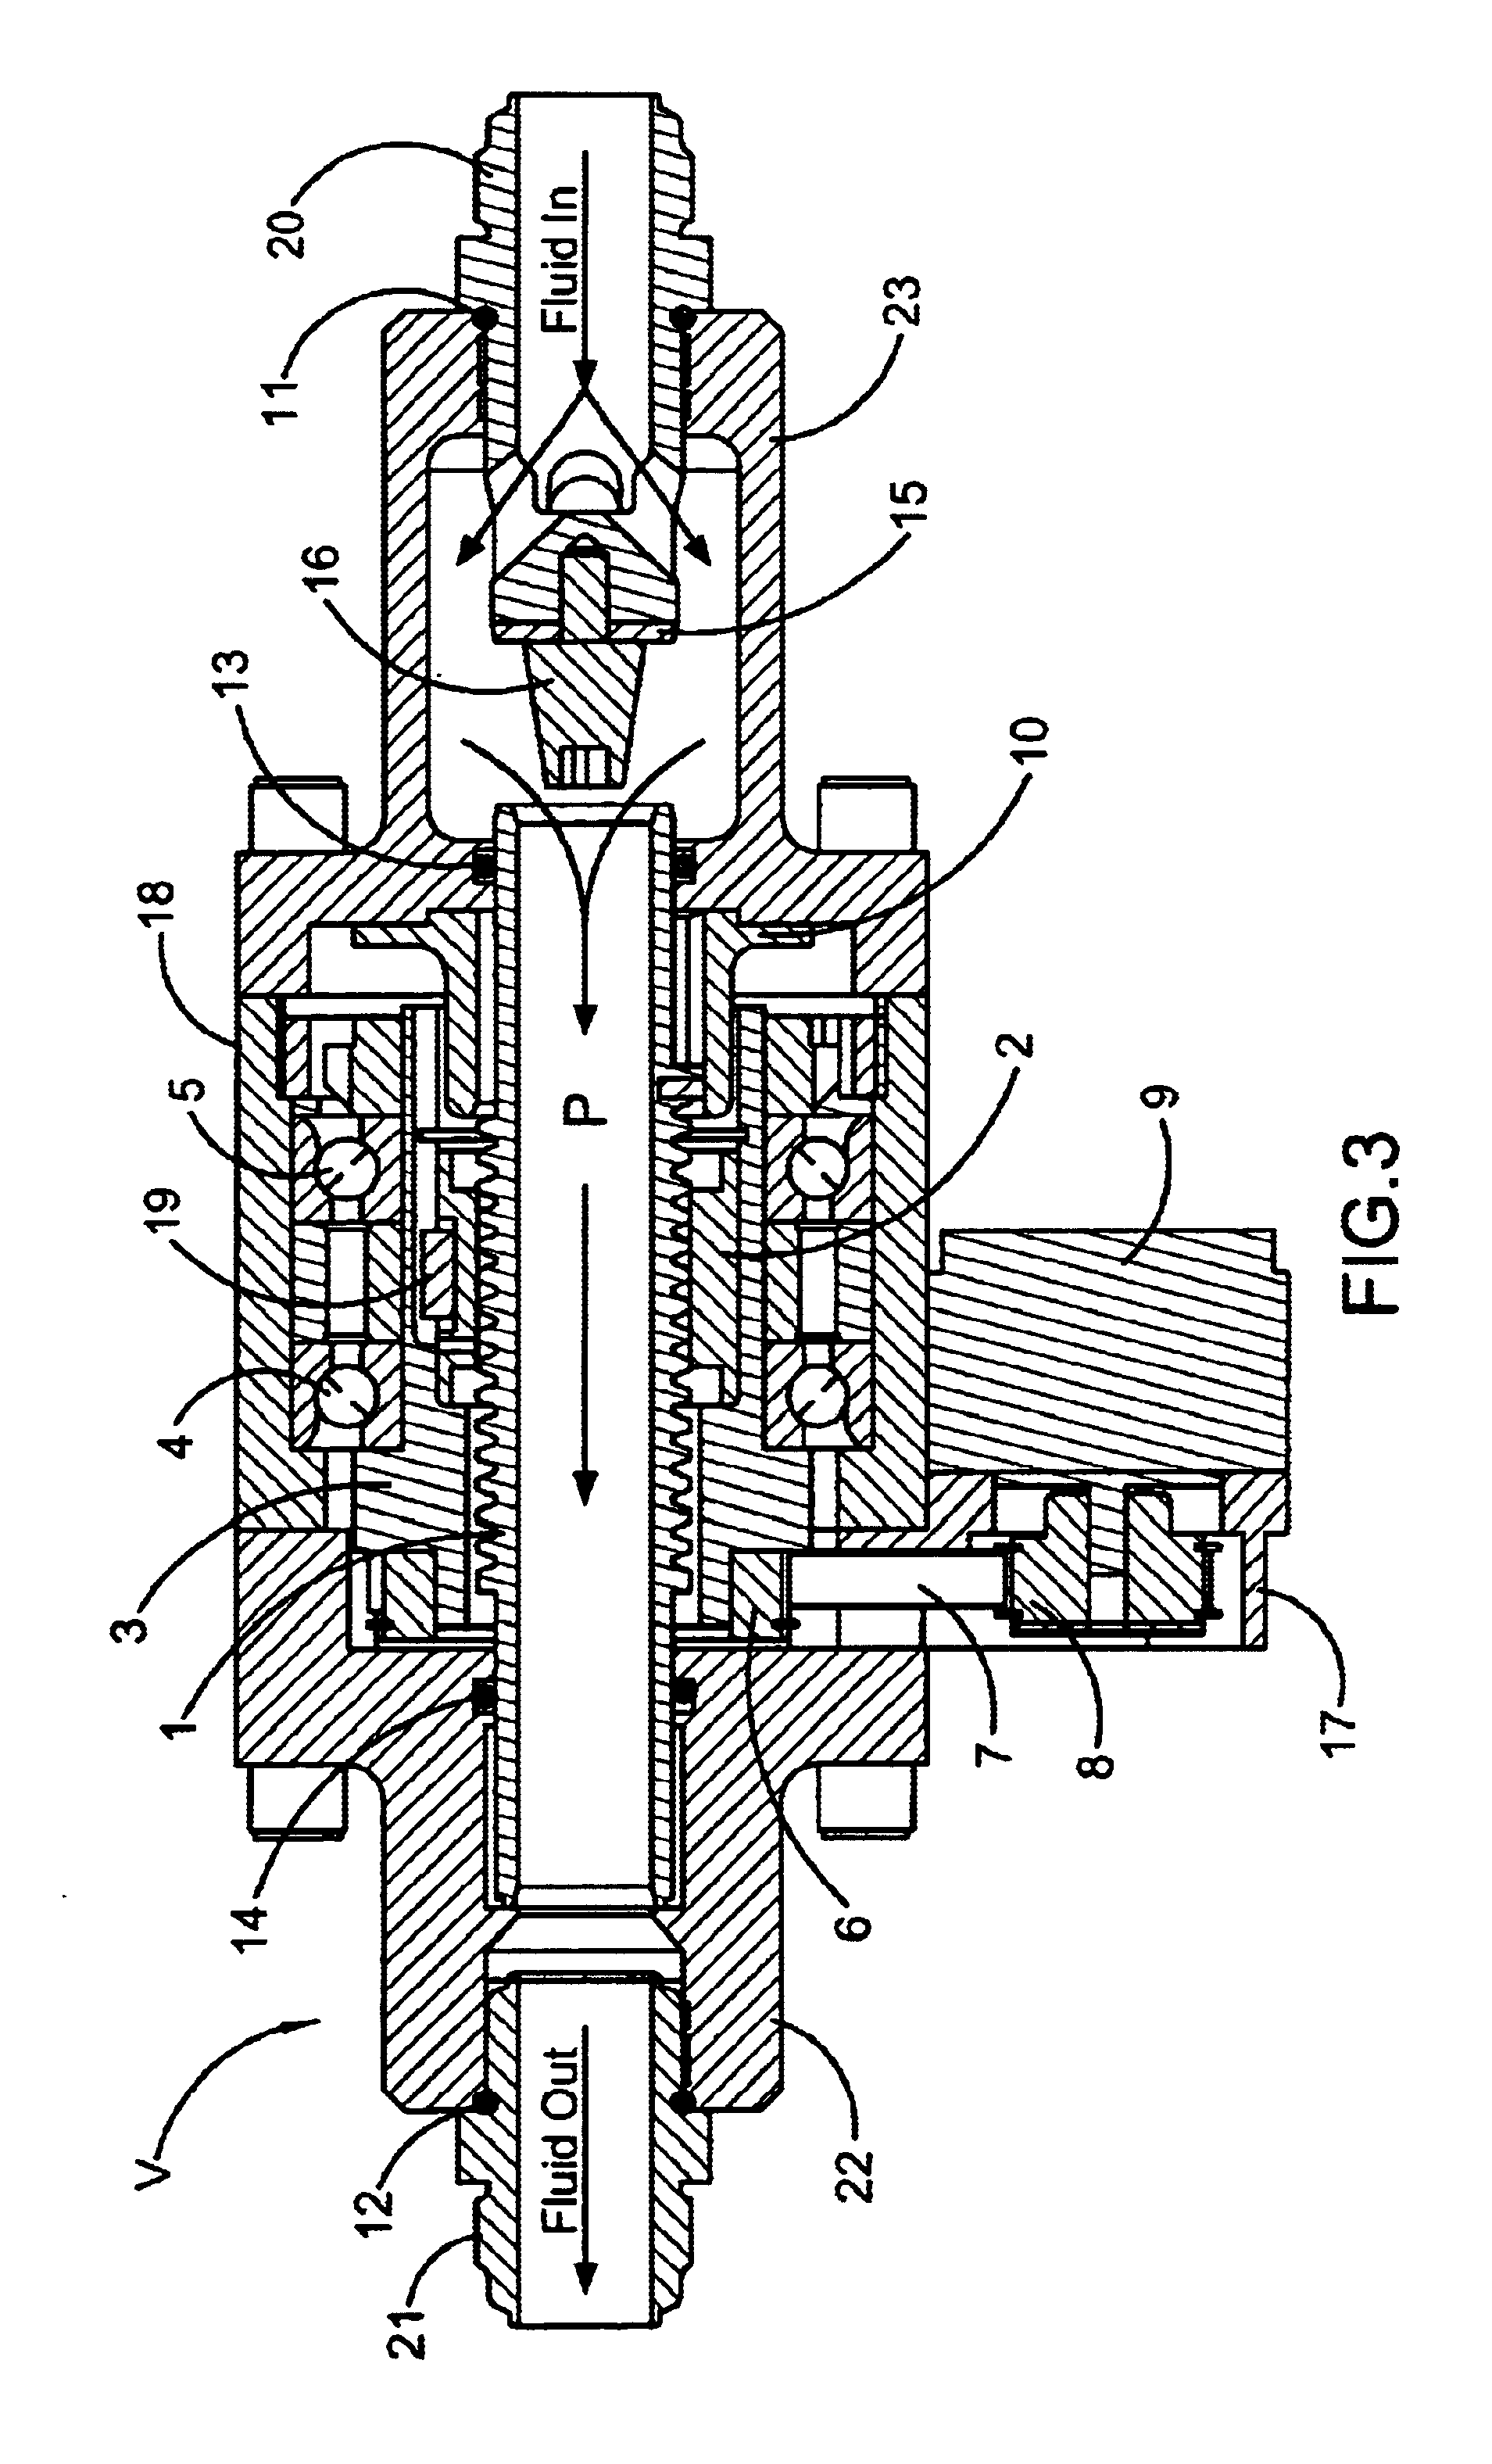 Electro-mechanical coaxial valve